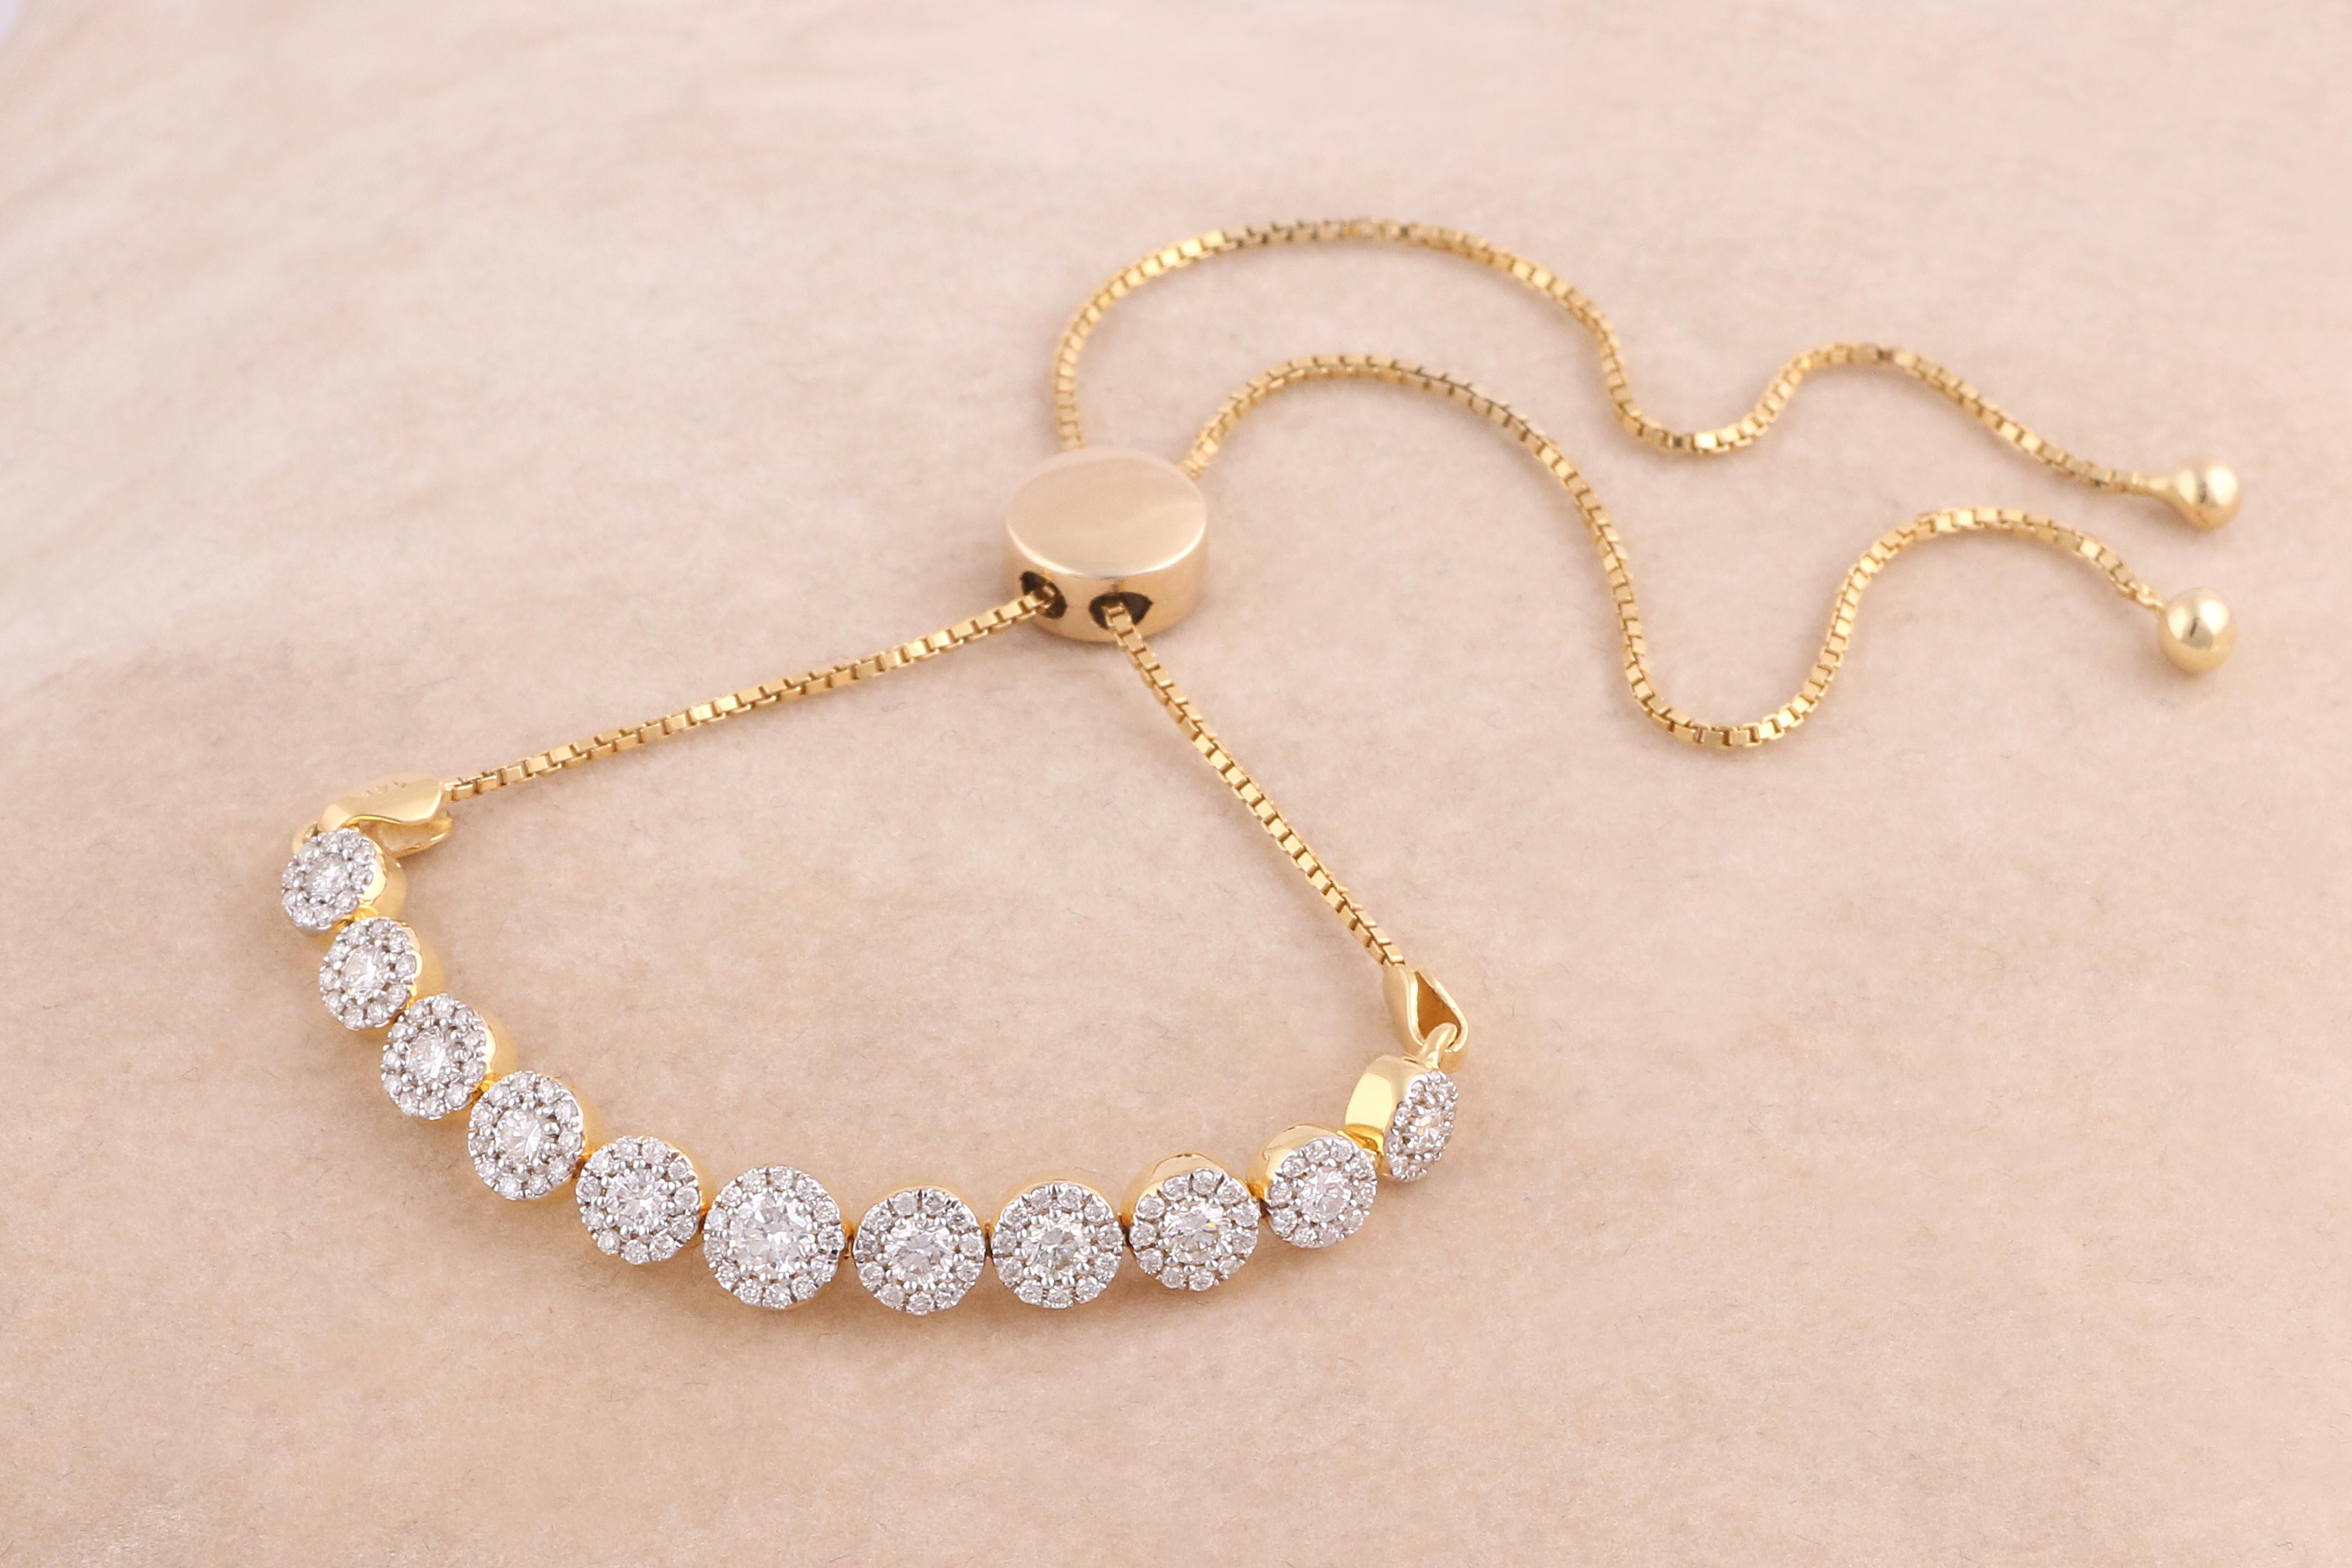 Unsere wunderschönen Diamantarmbänder sind fein in die erstaunlichsten Designs eingefasst, die von modernen Schmuckstücken bis hin zu faszinierenden Klassikern reichen, und sie werden sicherlich die Romantik zwischen Ihnen und Ihrem Ehepartner